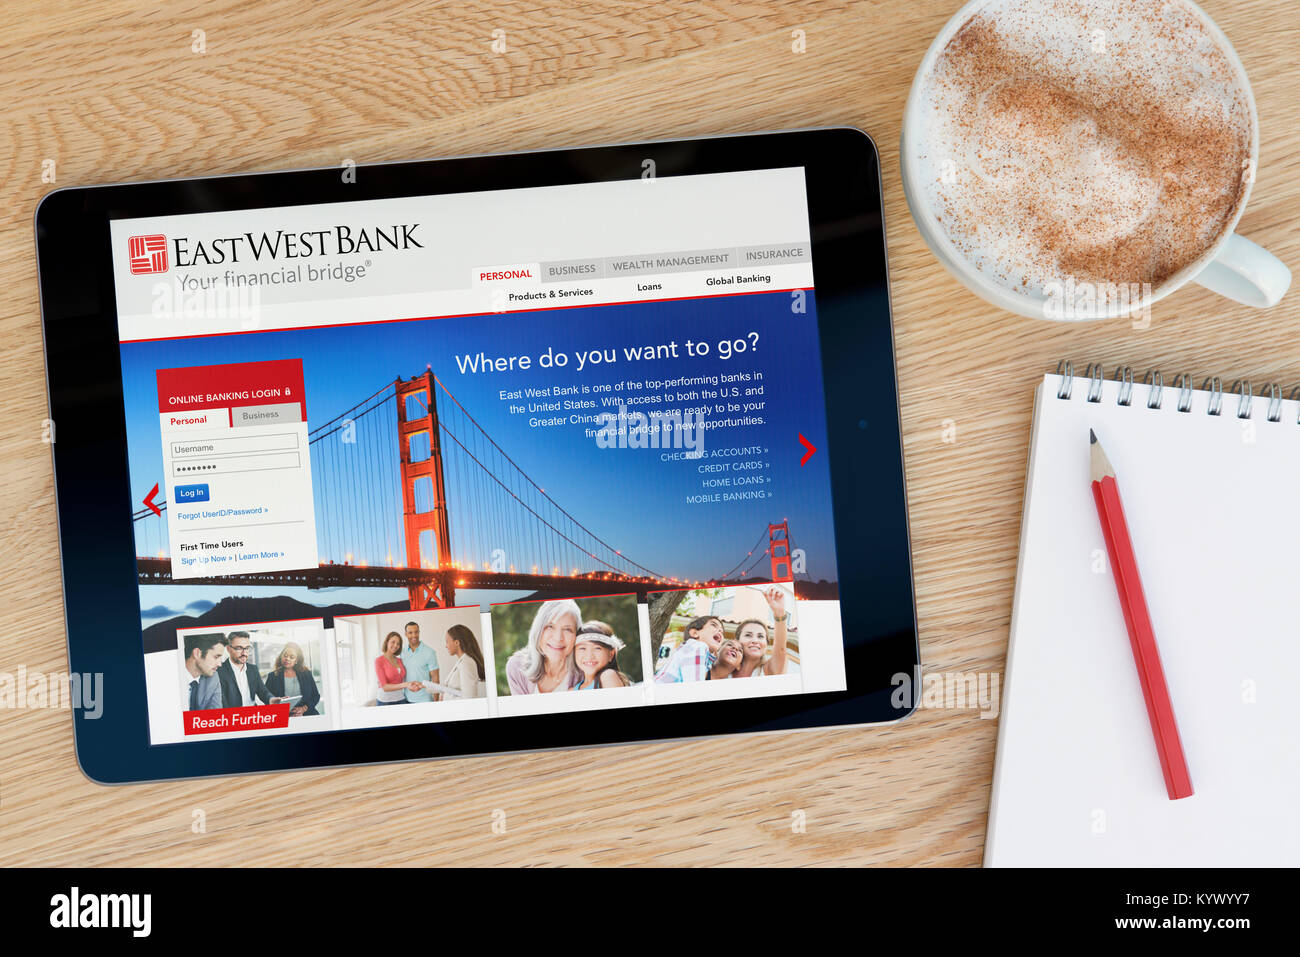 Die East West Bank Website auf einem iPad Tablet, auf einen hölzernen Tisch neben einem Notizblock, Bleistift und Tasse Kaffee (nur redaktionell) Stockfoto